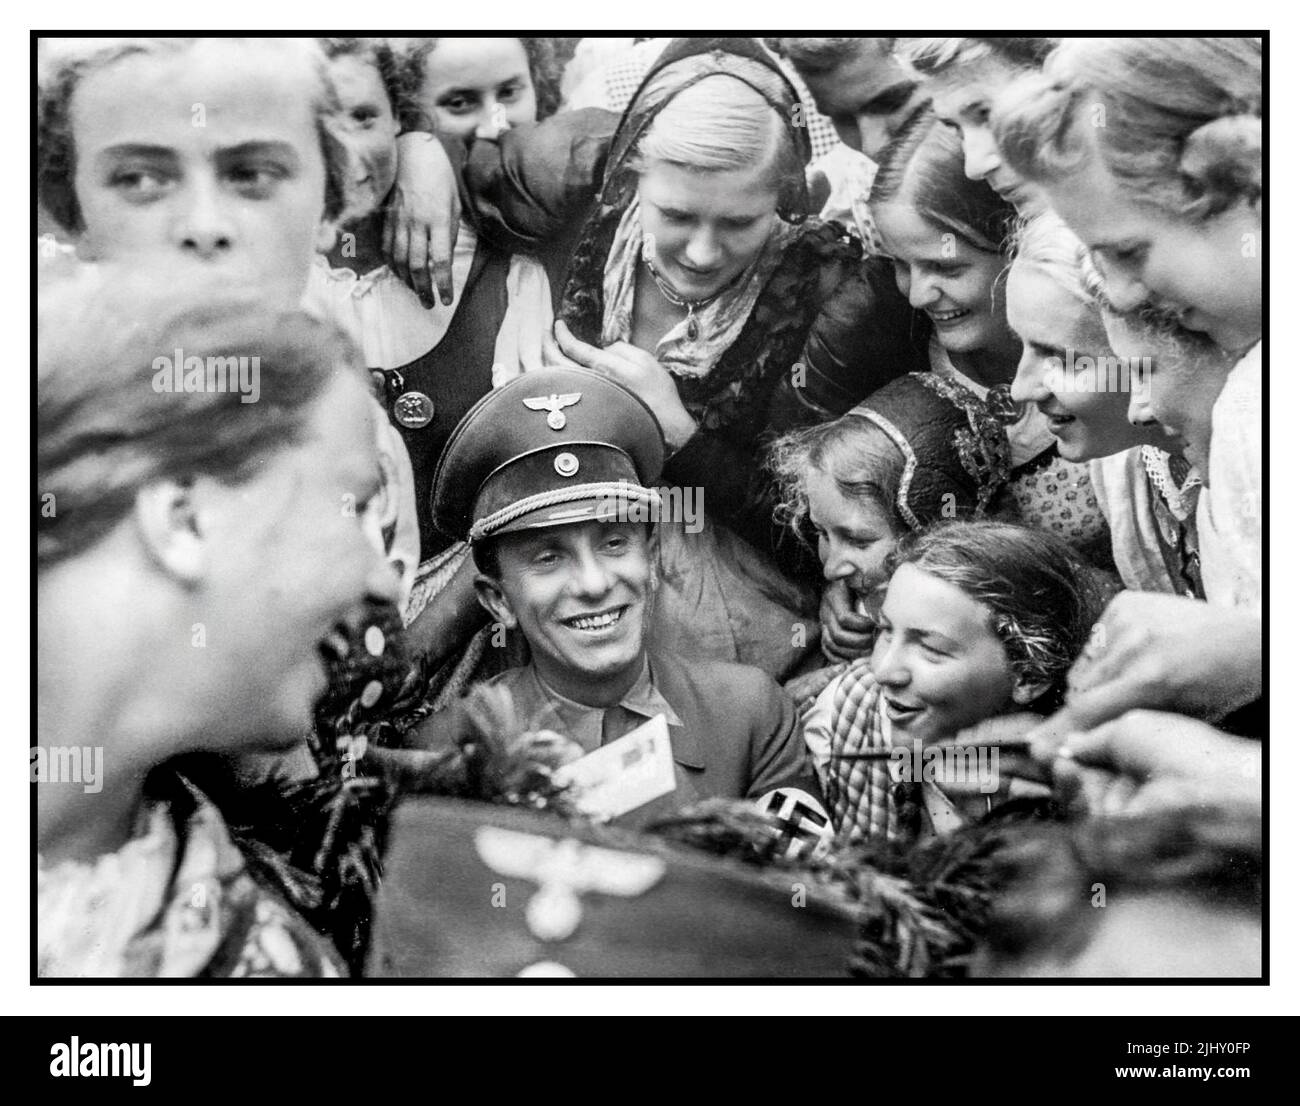 Le dirigeant nazi Joseph Goebbels entouré par la Ligue des filles allemandes enthousiaste ou la bande des Maidens allemands (allemand: Bund Deutscher Mädel, abrégé BDM) l'aile des filles du mouvement de jeunesse du Parti nazi, la Jeunesse Hitler. Paul Joseph Goebbels, (né 29 octobre 1897, Rheydt, Allemagne—mort 1 mai, 1945, Berlin), ministre de la propagande du troisième Reich allemand sous Adolf Hitler. Maître orateur et propagandiste, il a présenté au peuple allemand une image favorable du régime nazi. Adolf Hitler a créé le ministère Reich des Lumières publiques et de la propagande avec Goebbels à sa tête. Banque D'Images